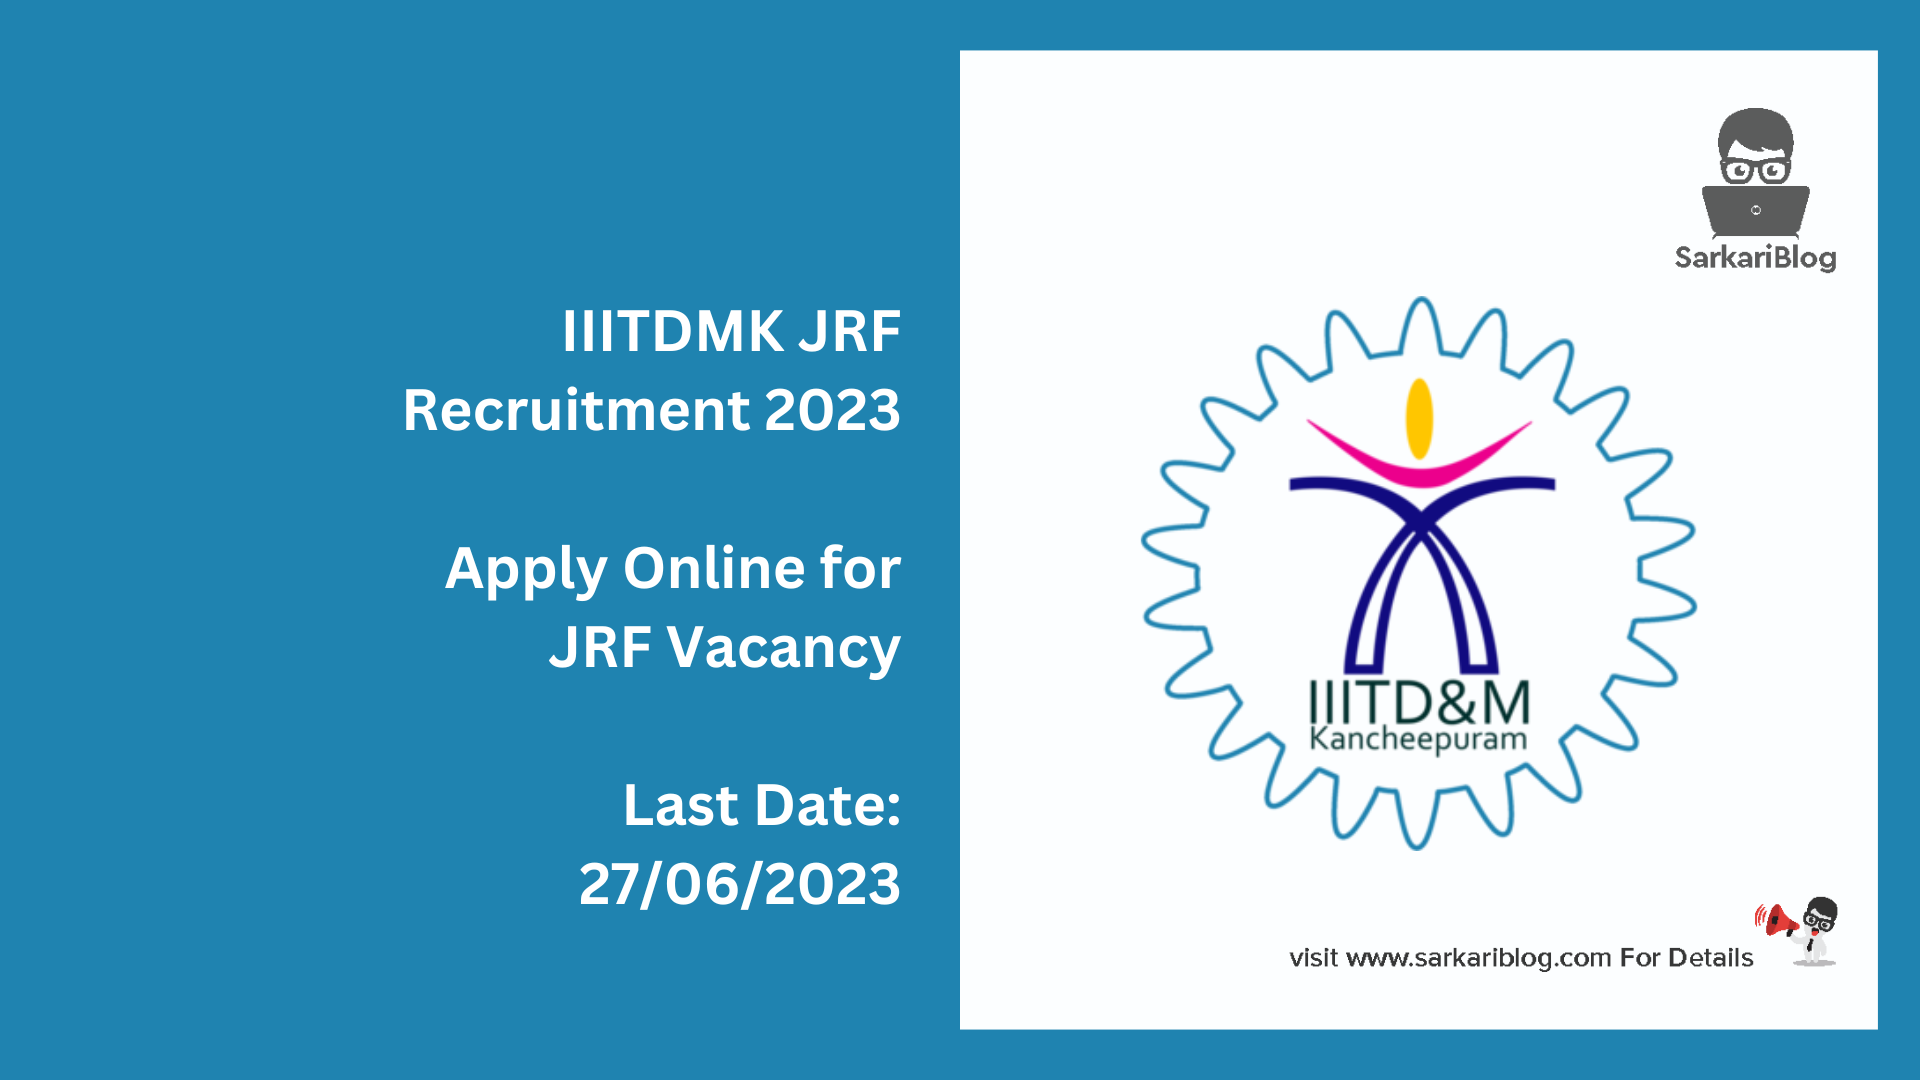 IIITDMK JRF Recruitment 2023